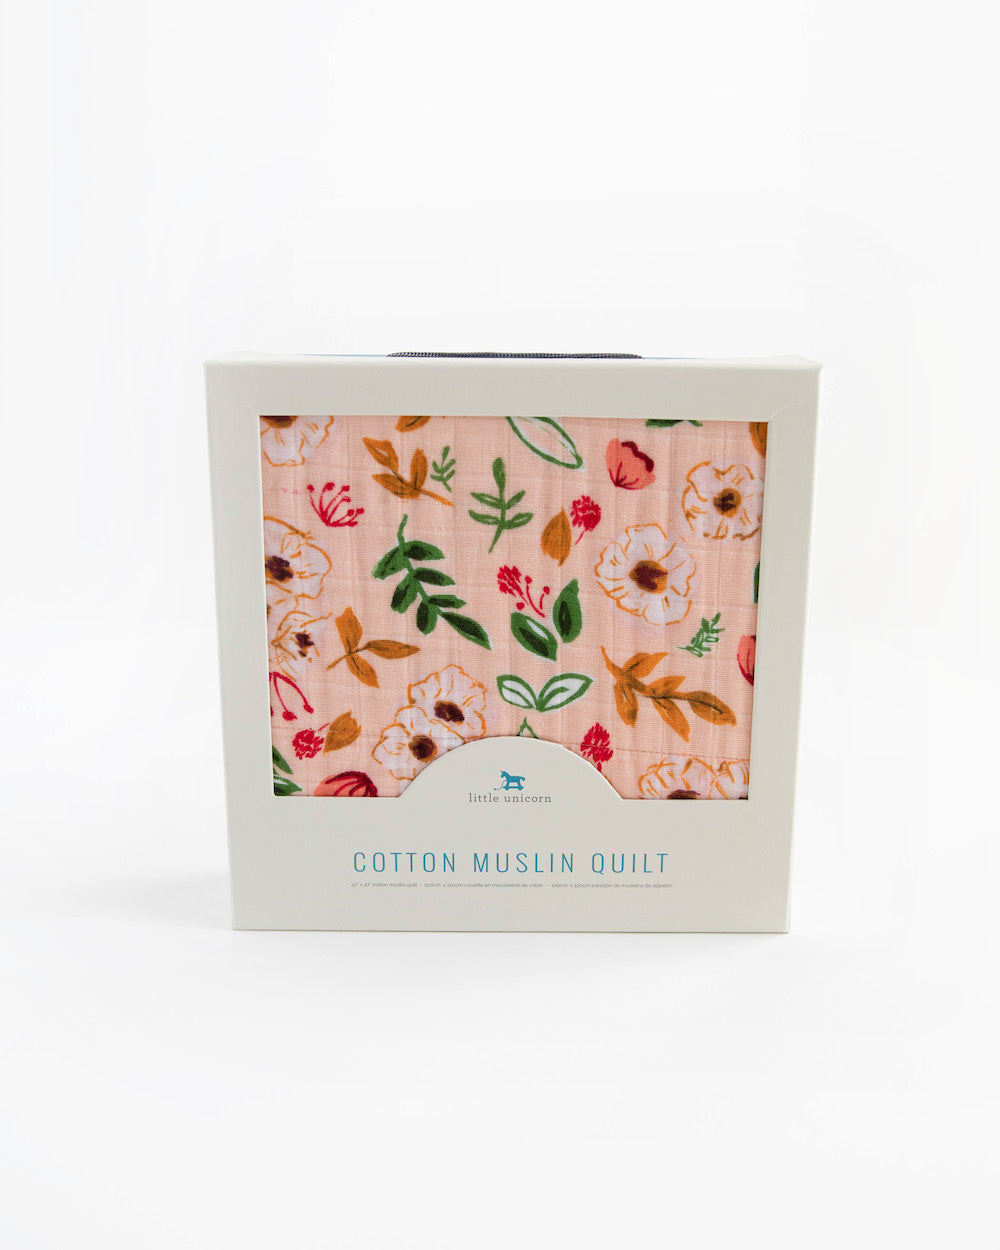 Little Unicorn Original Cotton Muslin Quilt | Vintage Floral